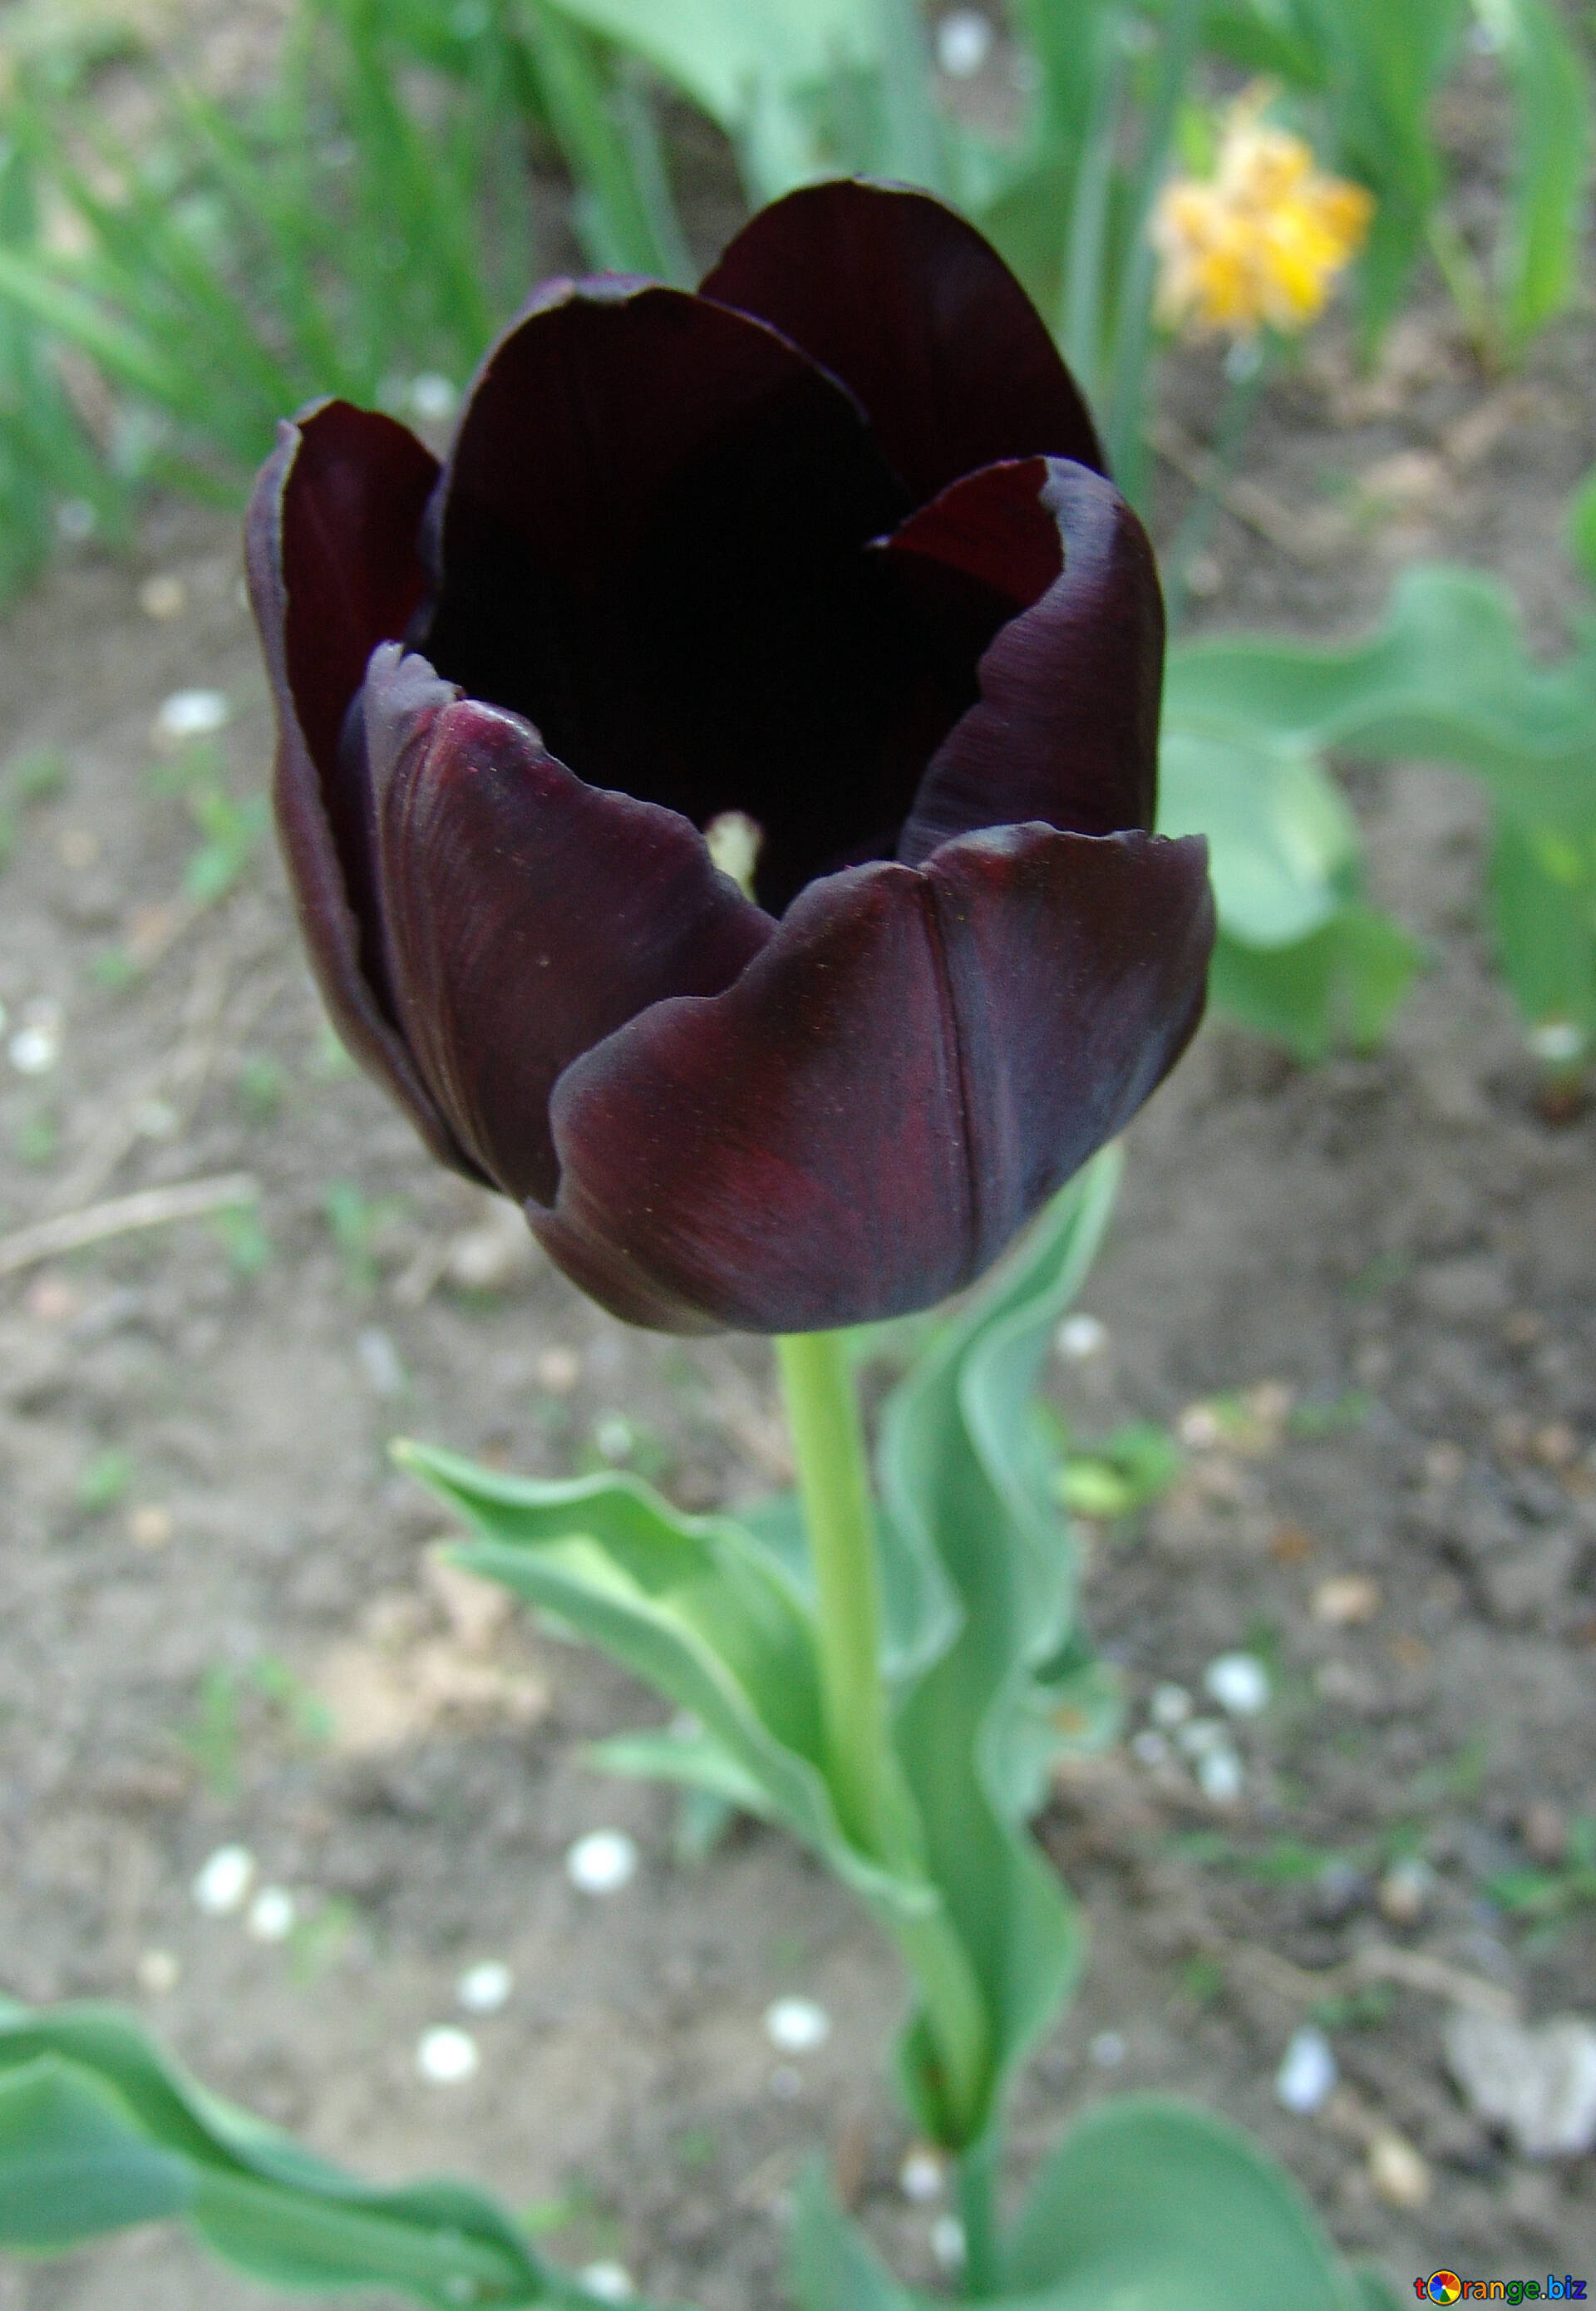 Tulipán negro imagen libre - № 5301